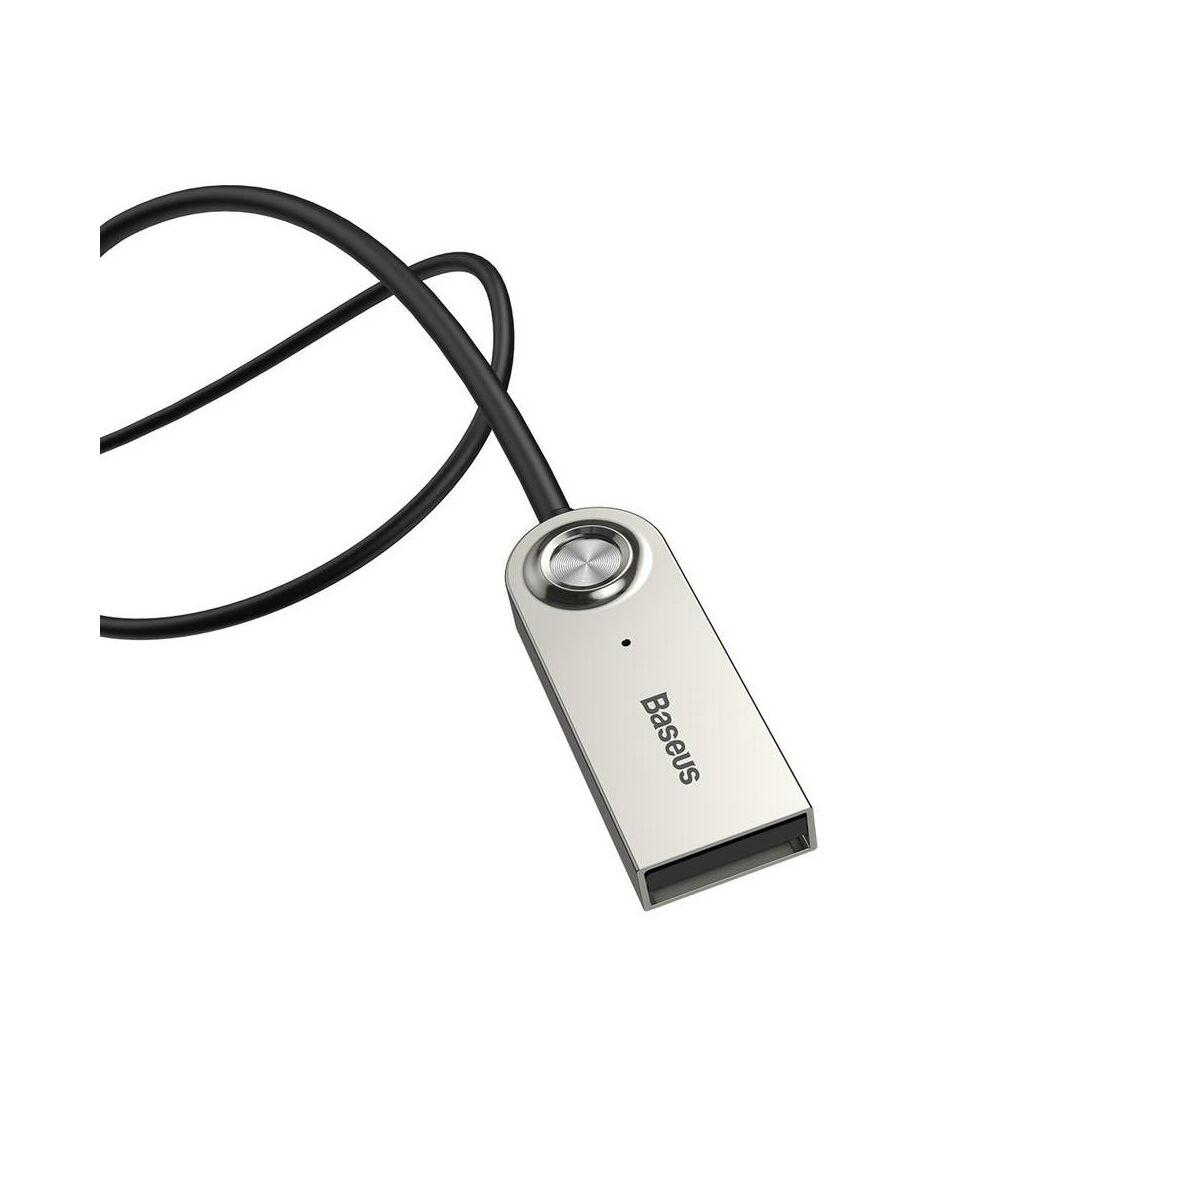 Kép 3/8 - Baseus átalakító kábel, BA01 USB + vezeték nélküli adapterről 3.5 mm Jack bemenetre, fekete (CABA01-01)